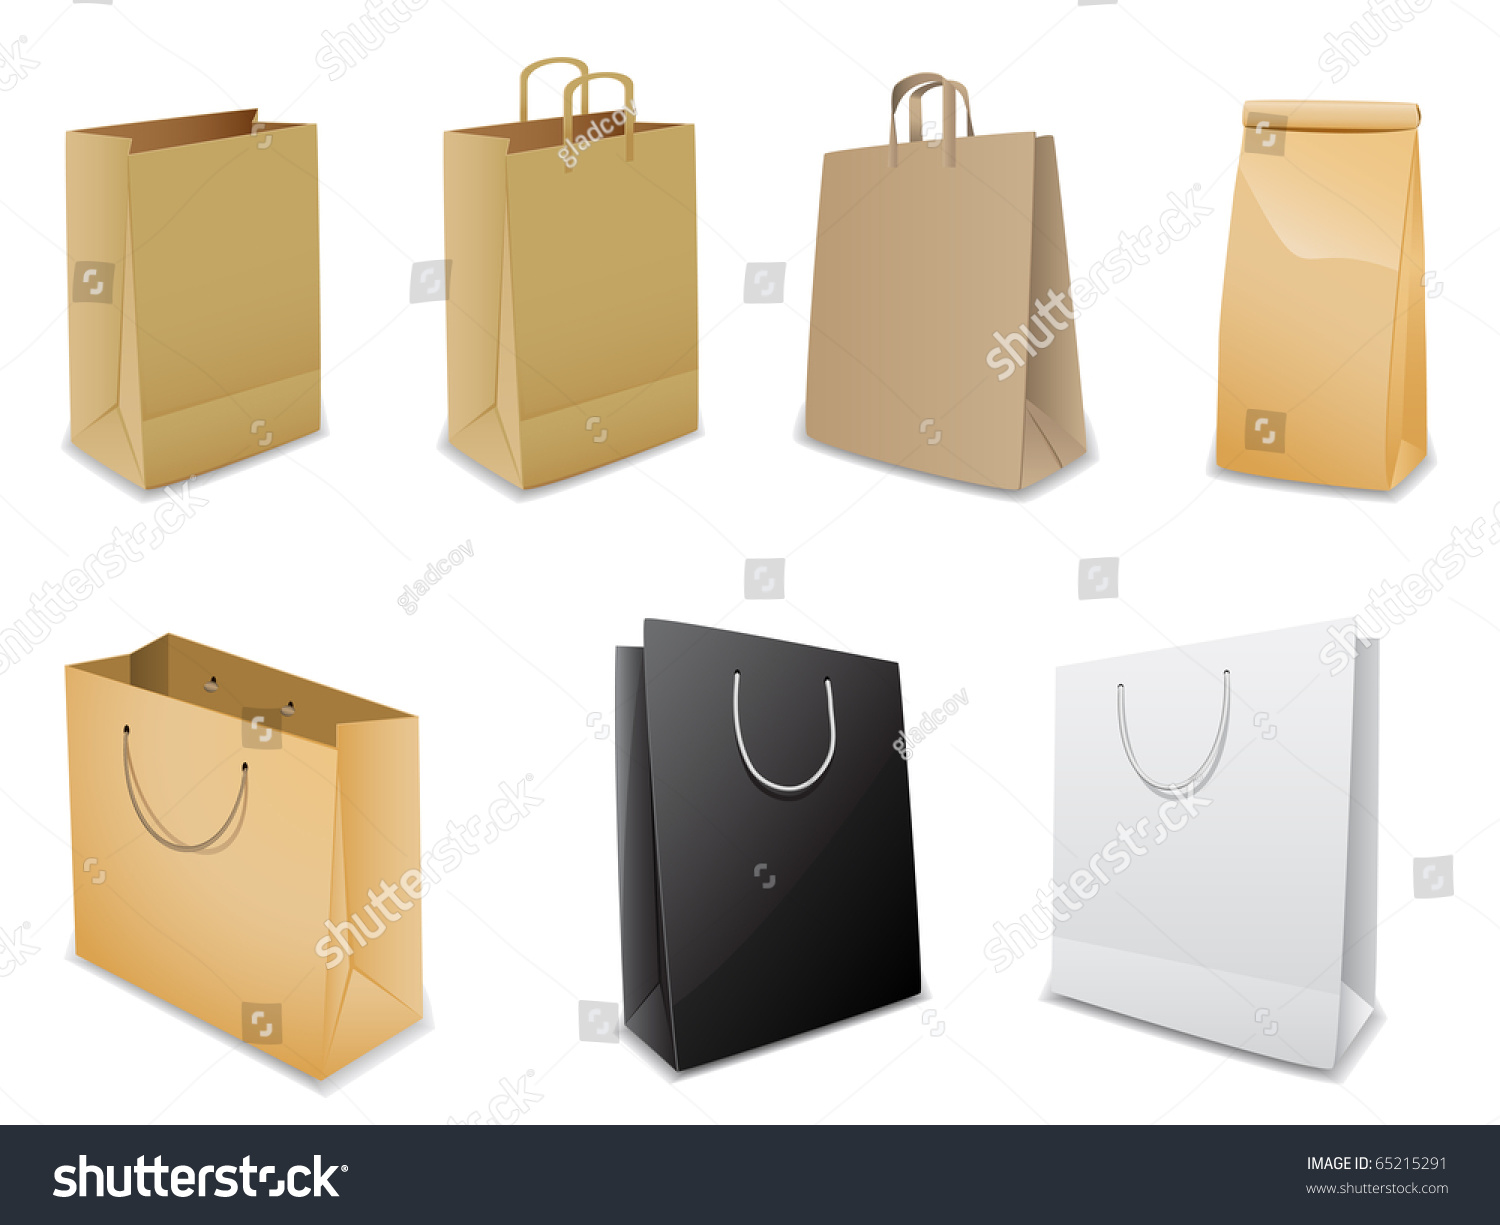 Set Of Vector Paper Bags - 65215291 : Shutterstock